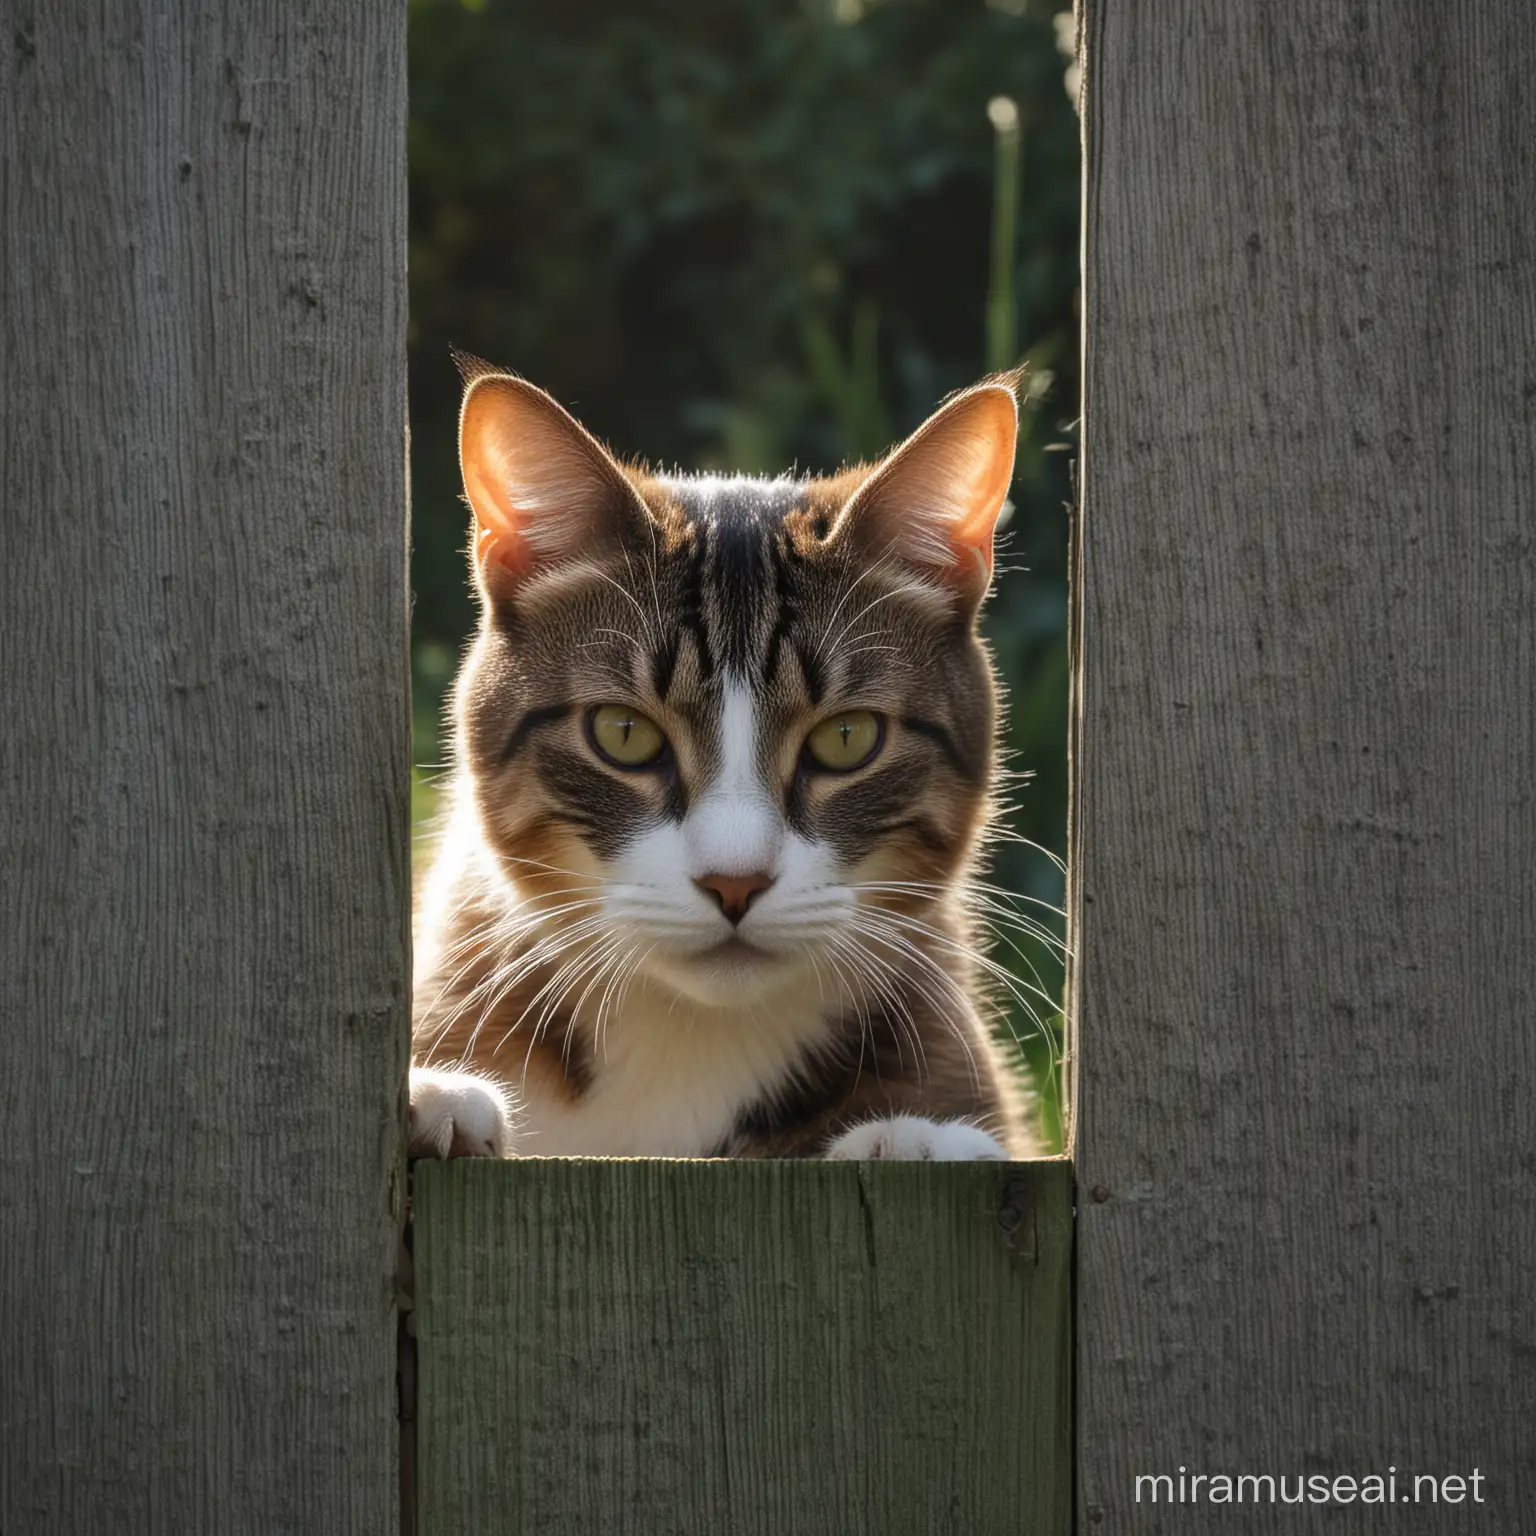 Katze schaut aus einer Lücke vom Gartenzaun heraus, lebendig, detailliert, Licht und Schatten